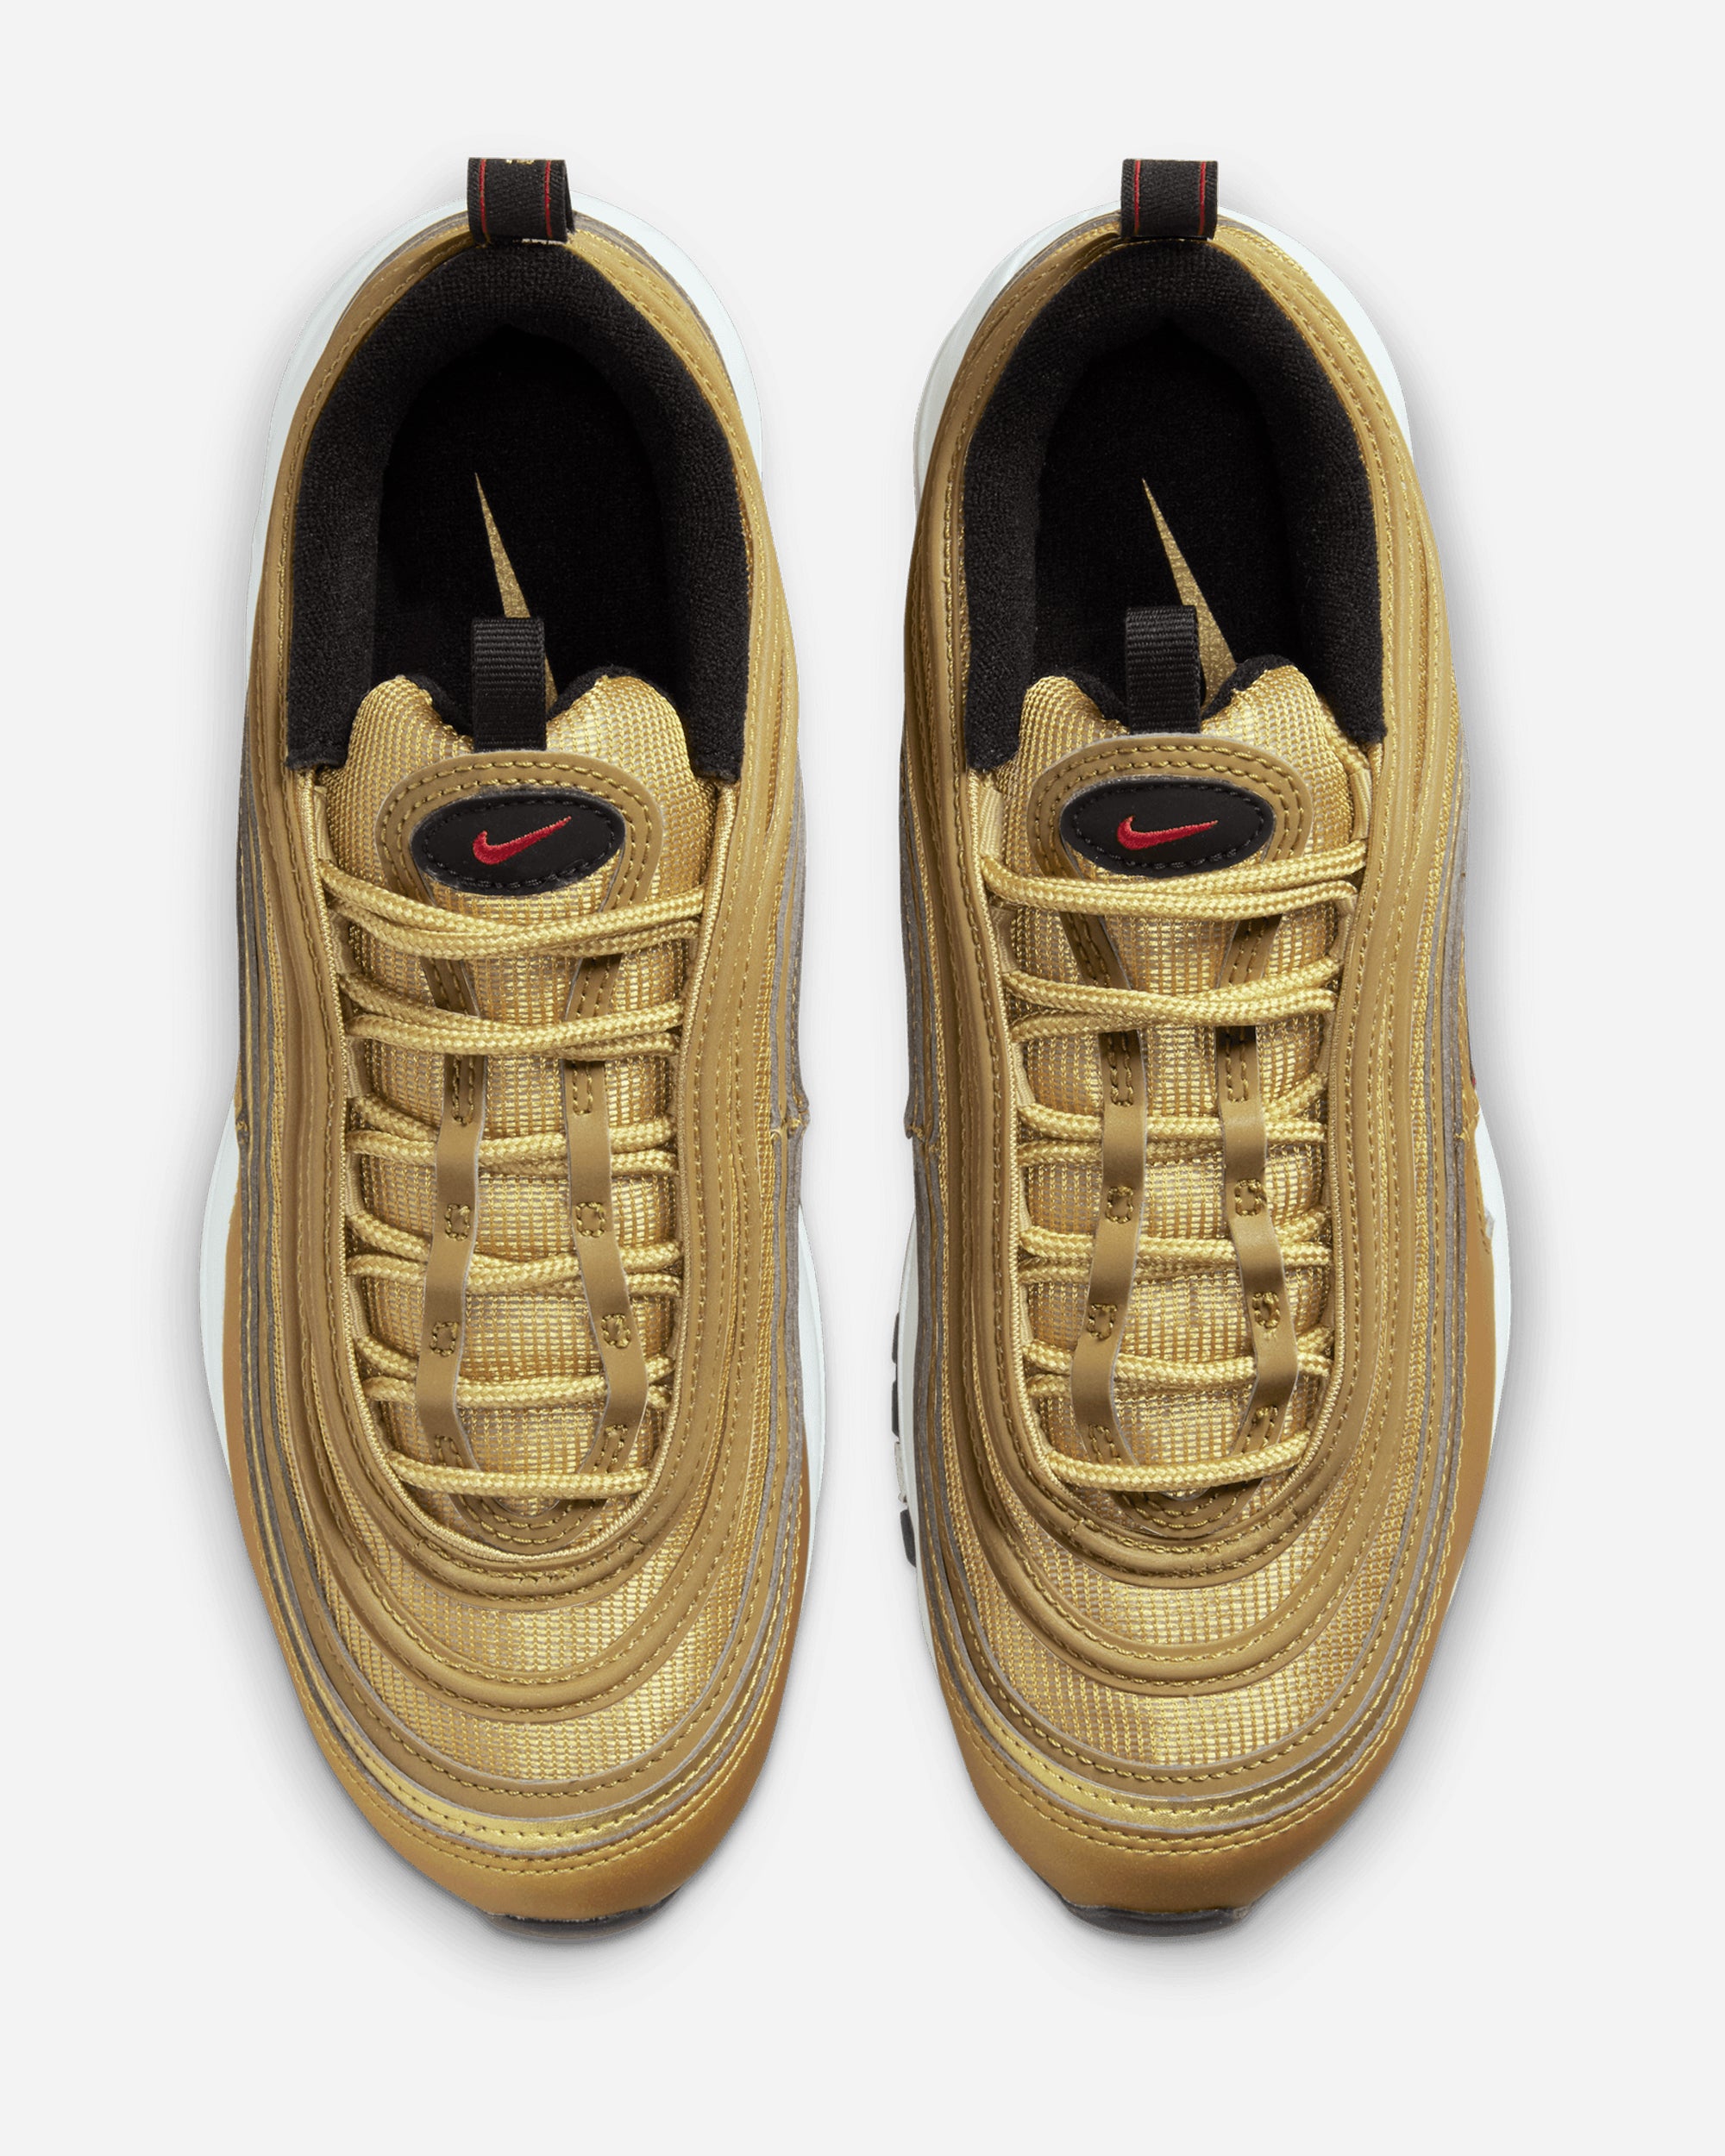 Nike Air Max 97 OG 'Gold Bullet' METALLIC GOLD/VARSITY RED-BL DQ9131-700